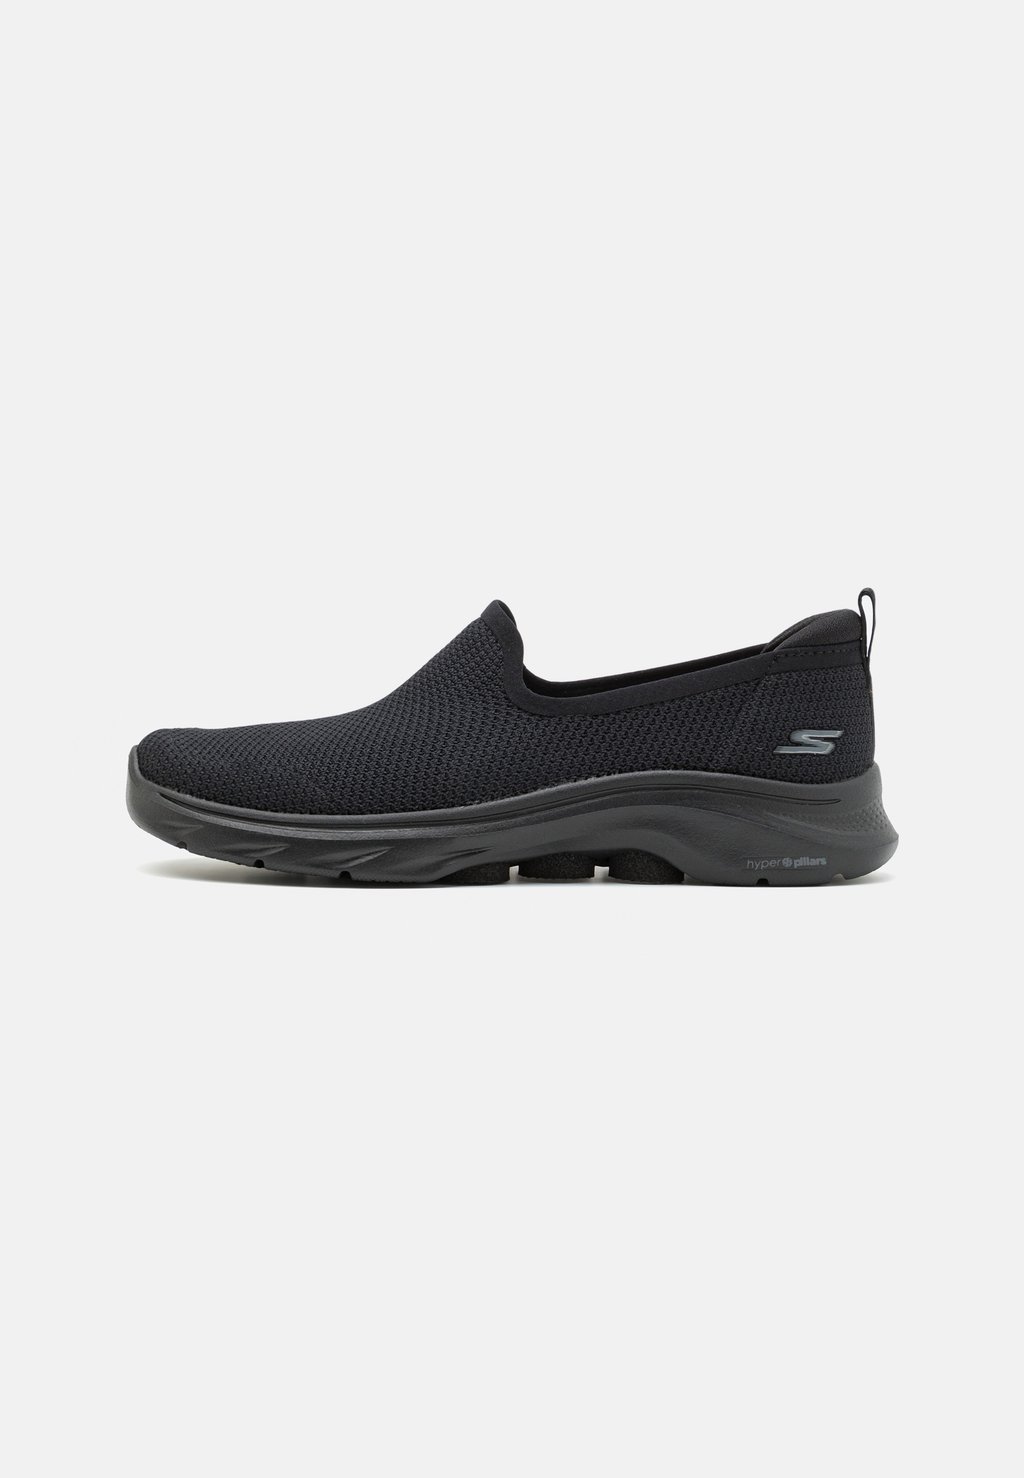 Обувь для ходьбы GO WALK 7 SLIP ON Skechers Performance, цвет black обувь для ходьбы go walk slip on skechers performance цвет black white